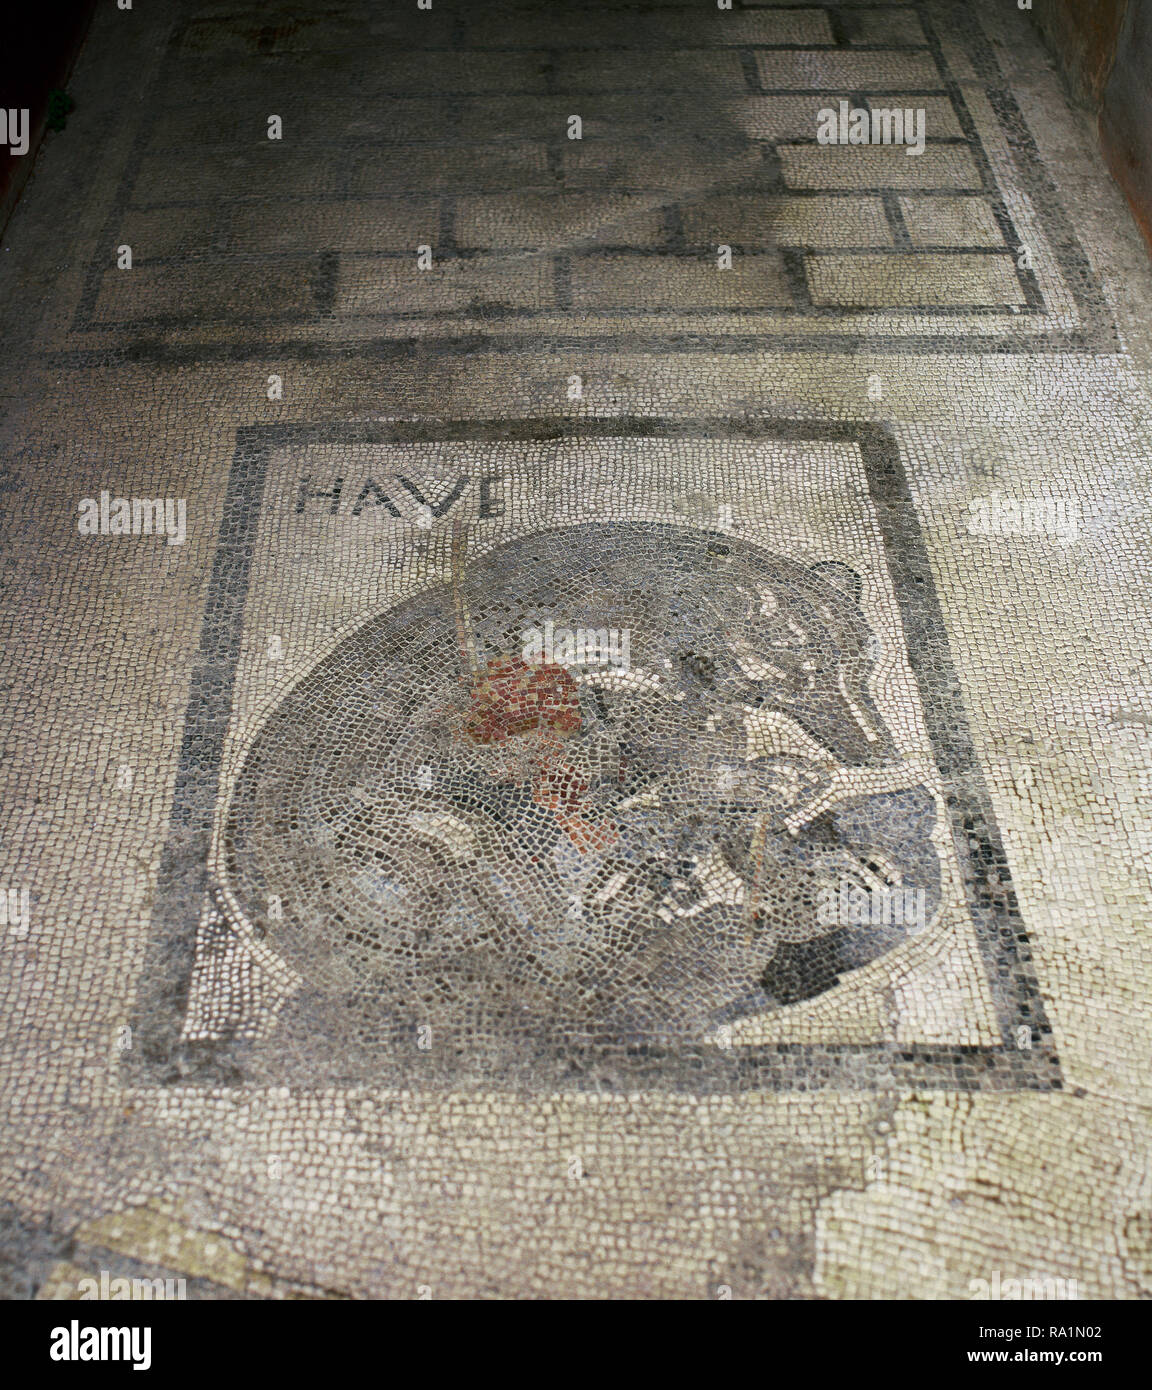 Italien. Pompeji. Haus der verwundeter Bär, zurück in die Mitte des 1. Jahrhunderts datiert. Mosaik mit Ein verwundeter Bär von einem Speer, die durch den Begrüßungstext "Haben" flankiert wird. Haus der Bär (VII, 2, 45). Kampanien. Stockfoto